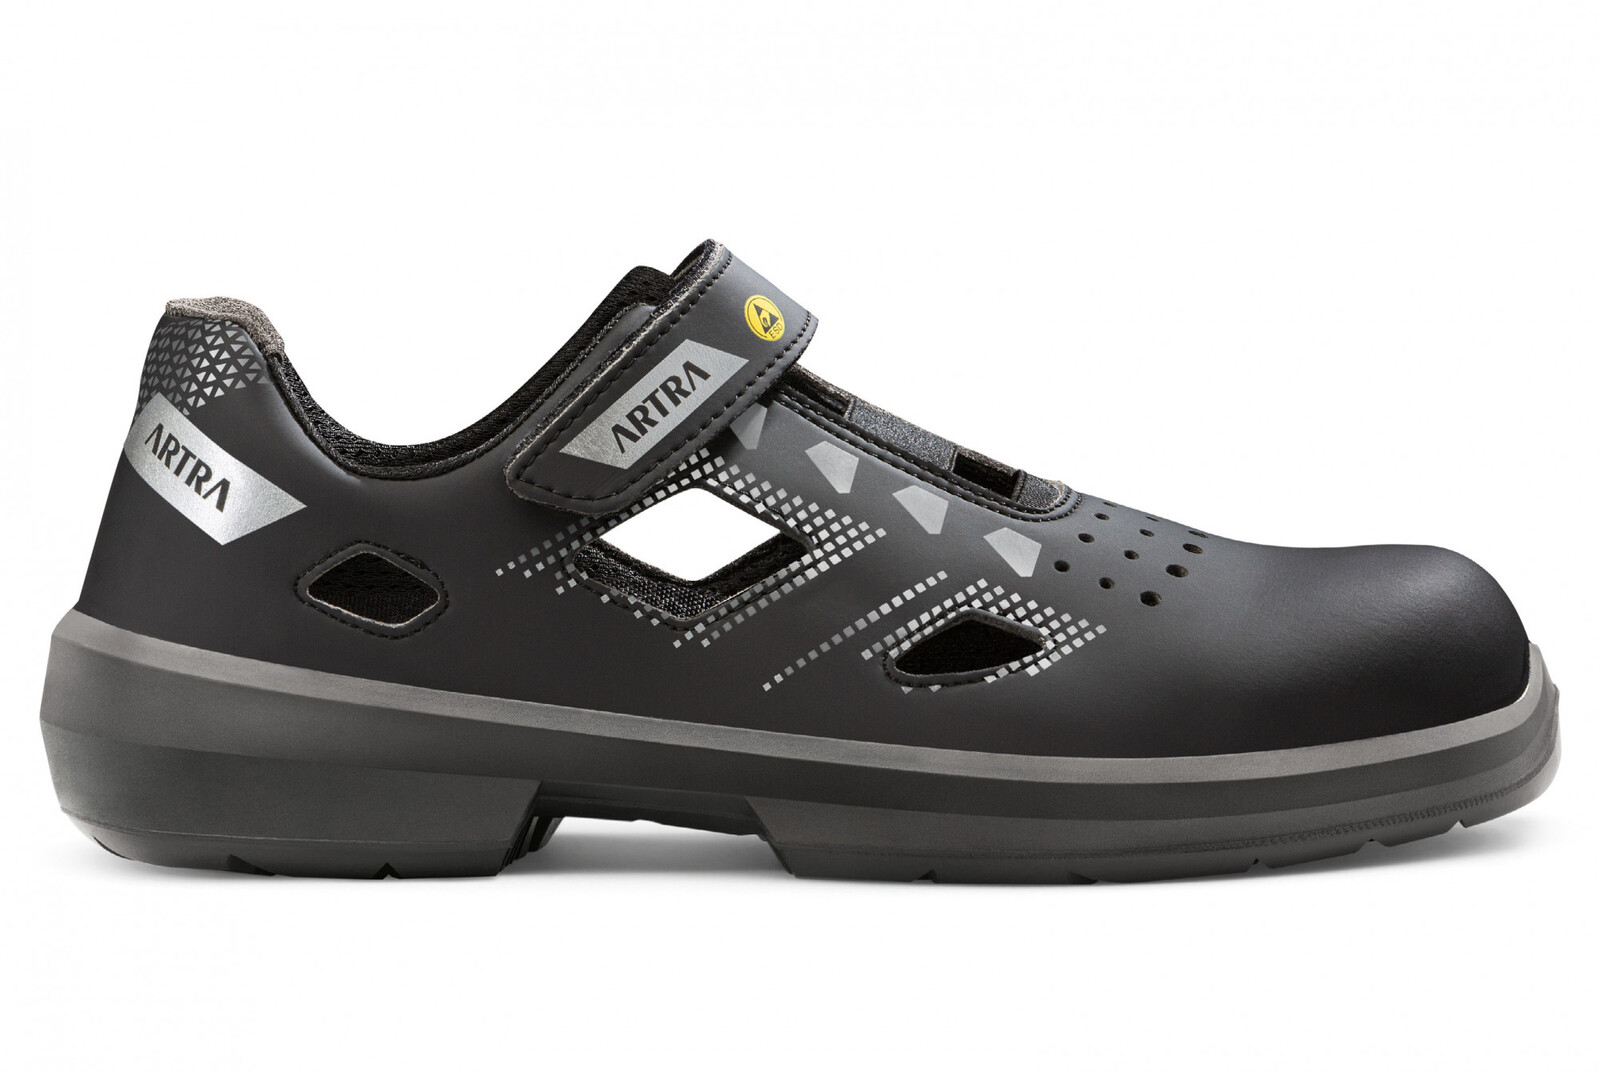 Bezpečnostné sandále Artra Arzo 805 676560 S1 SRC ESD MF - veľkosť: 35, farba: čierna/sivá